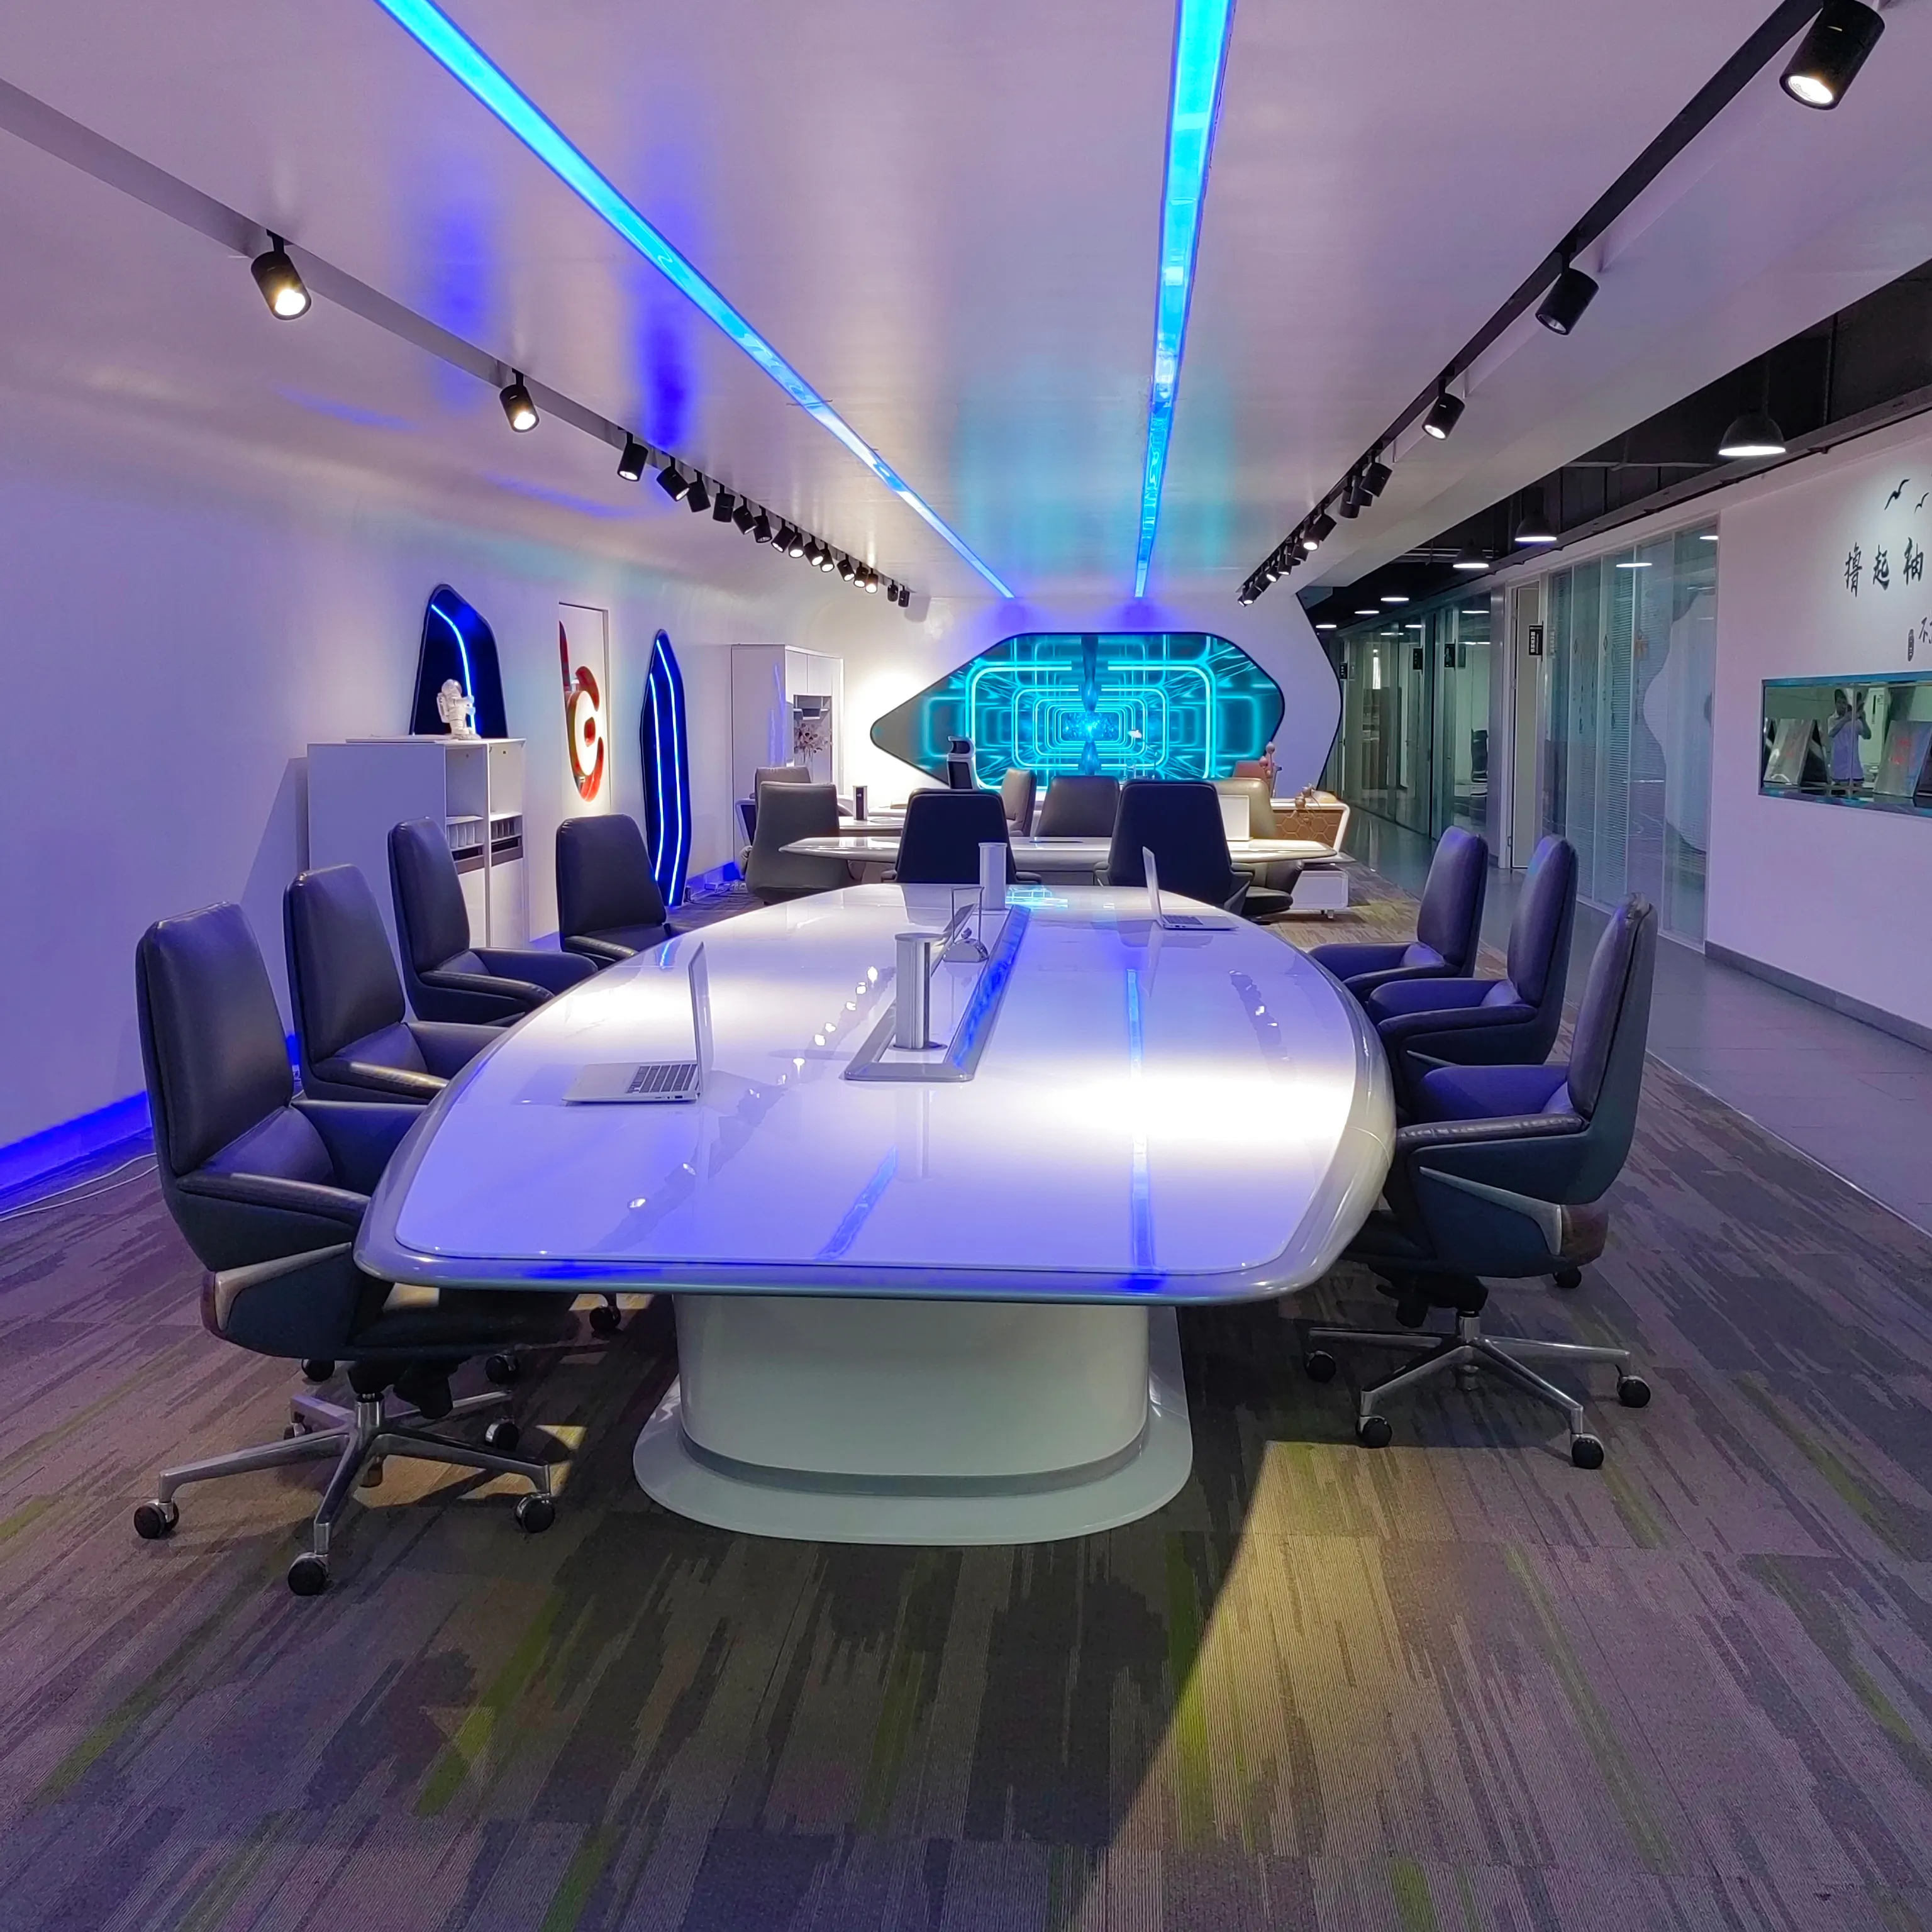 โต๊ะประชุมไม้คุณภาพสูง,โต๊ะประชุมขนาด20คนรูปแบบสำนักงานขนาดใหญ่ยอดนิยมปรับแต่งได้